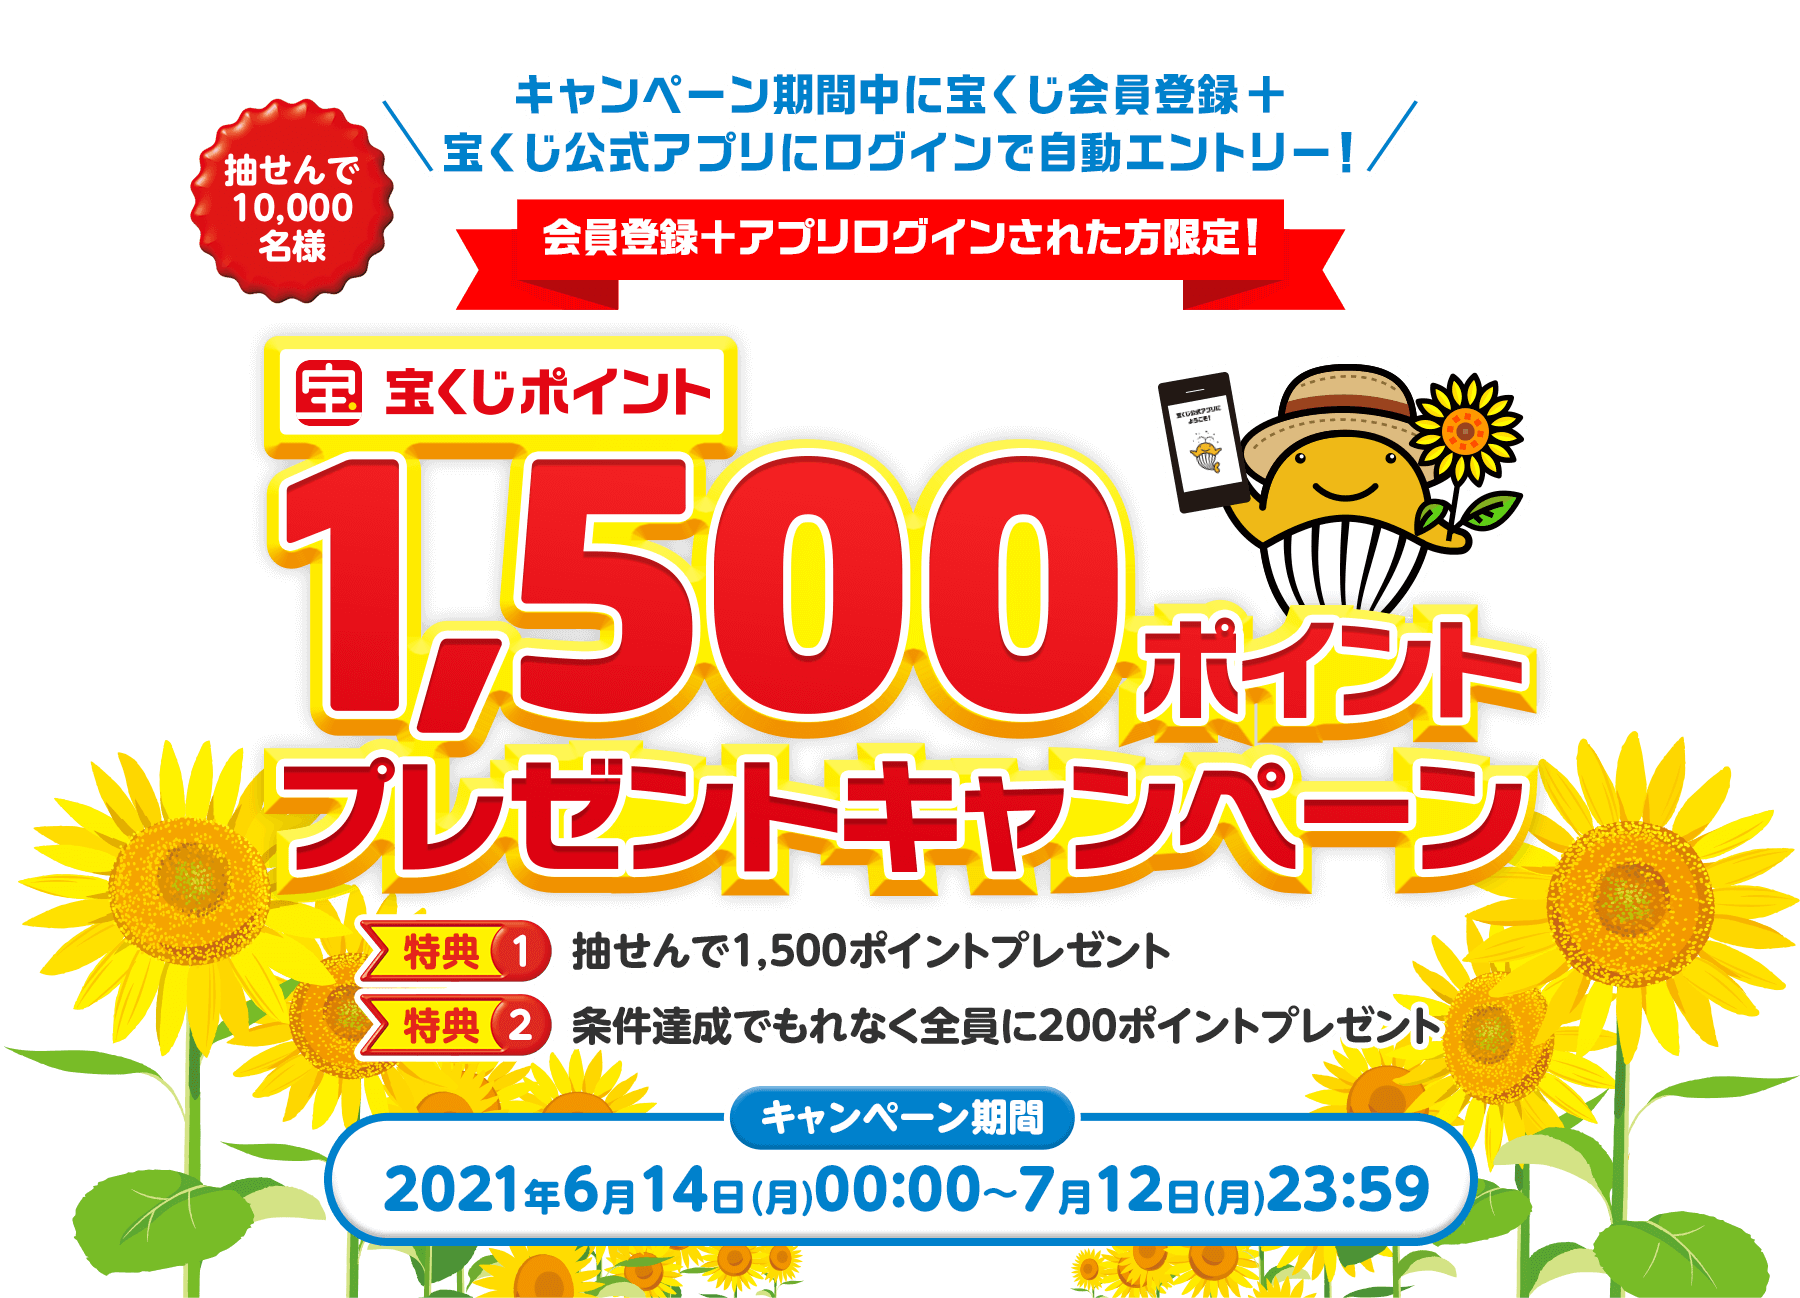 宝くじアプリで先着20万名にもれなく200円分ポイント、抽選で2万名に2000ポイントが貰える。～6/3。